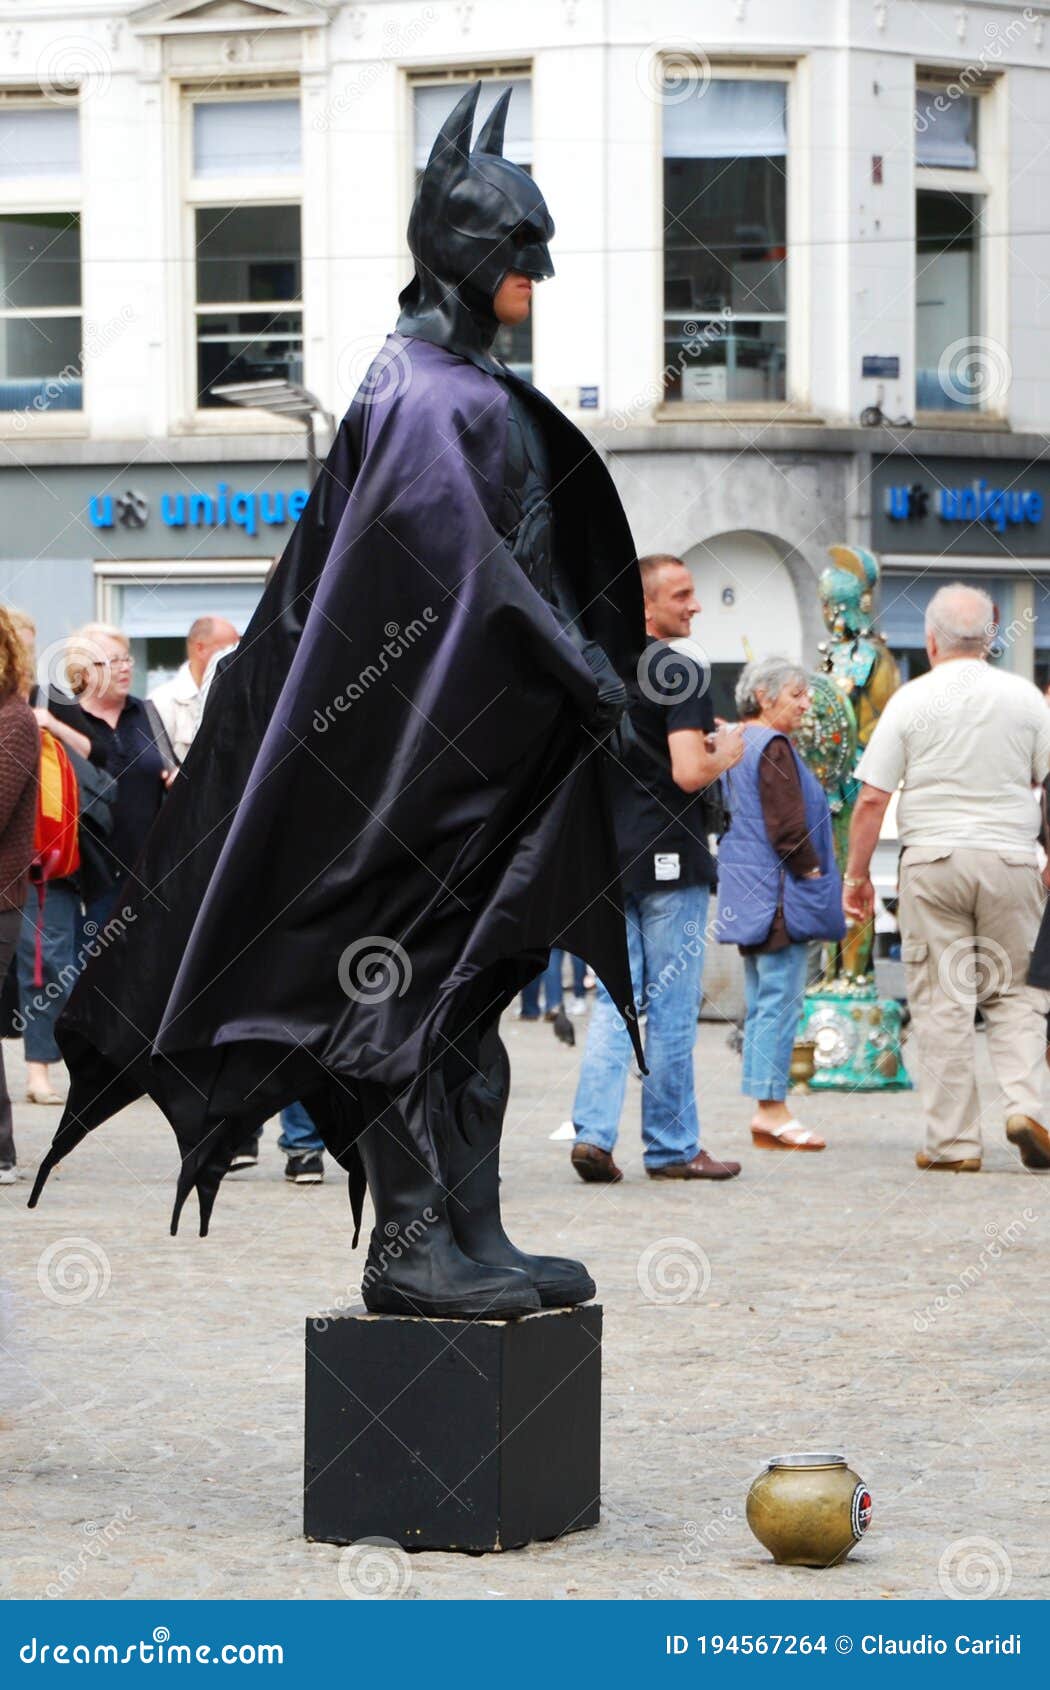 Actor Disfrazado De Batman En La Plaza Central De La Presa De Amsterdam.  Imagen de archivo editorial - Imagen de azul, oscuro: 194567264